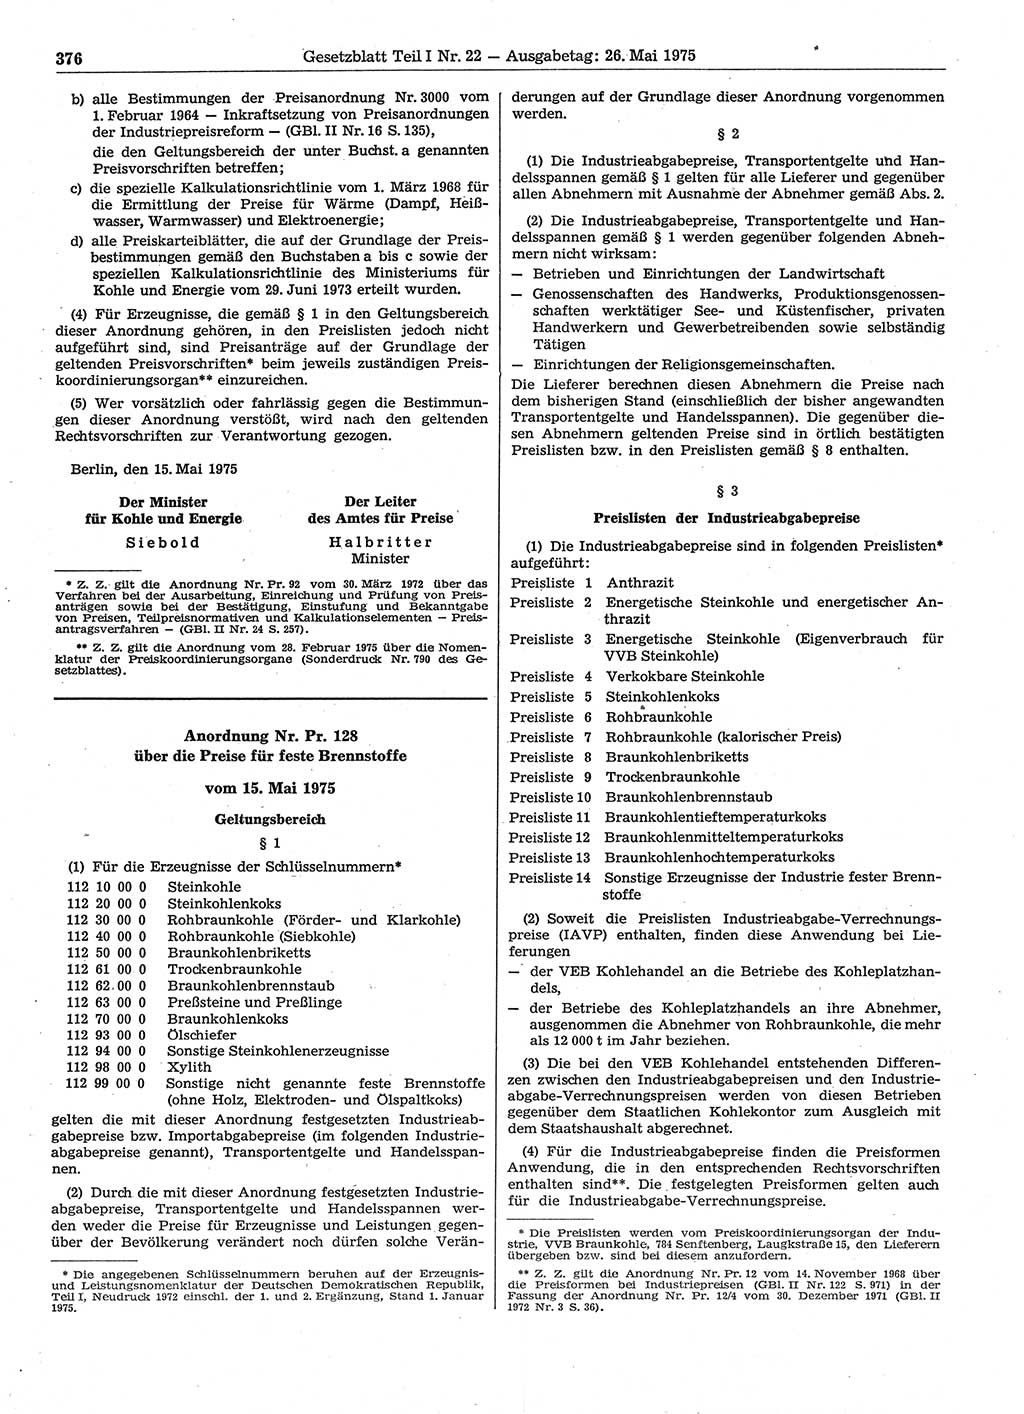 Gesetzblatt (GBl.) der Deutschen Demokratischen Republik (DDR) Teil Ⅰ 1975, Seite 376 (GBl. DDR Ⅰ 1975, S. 376)